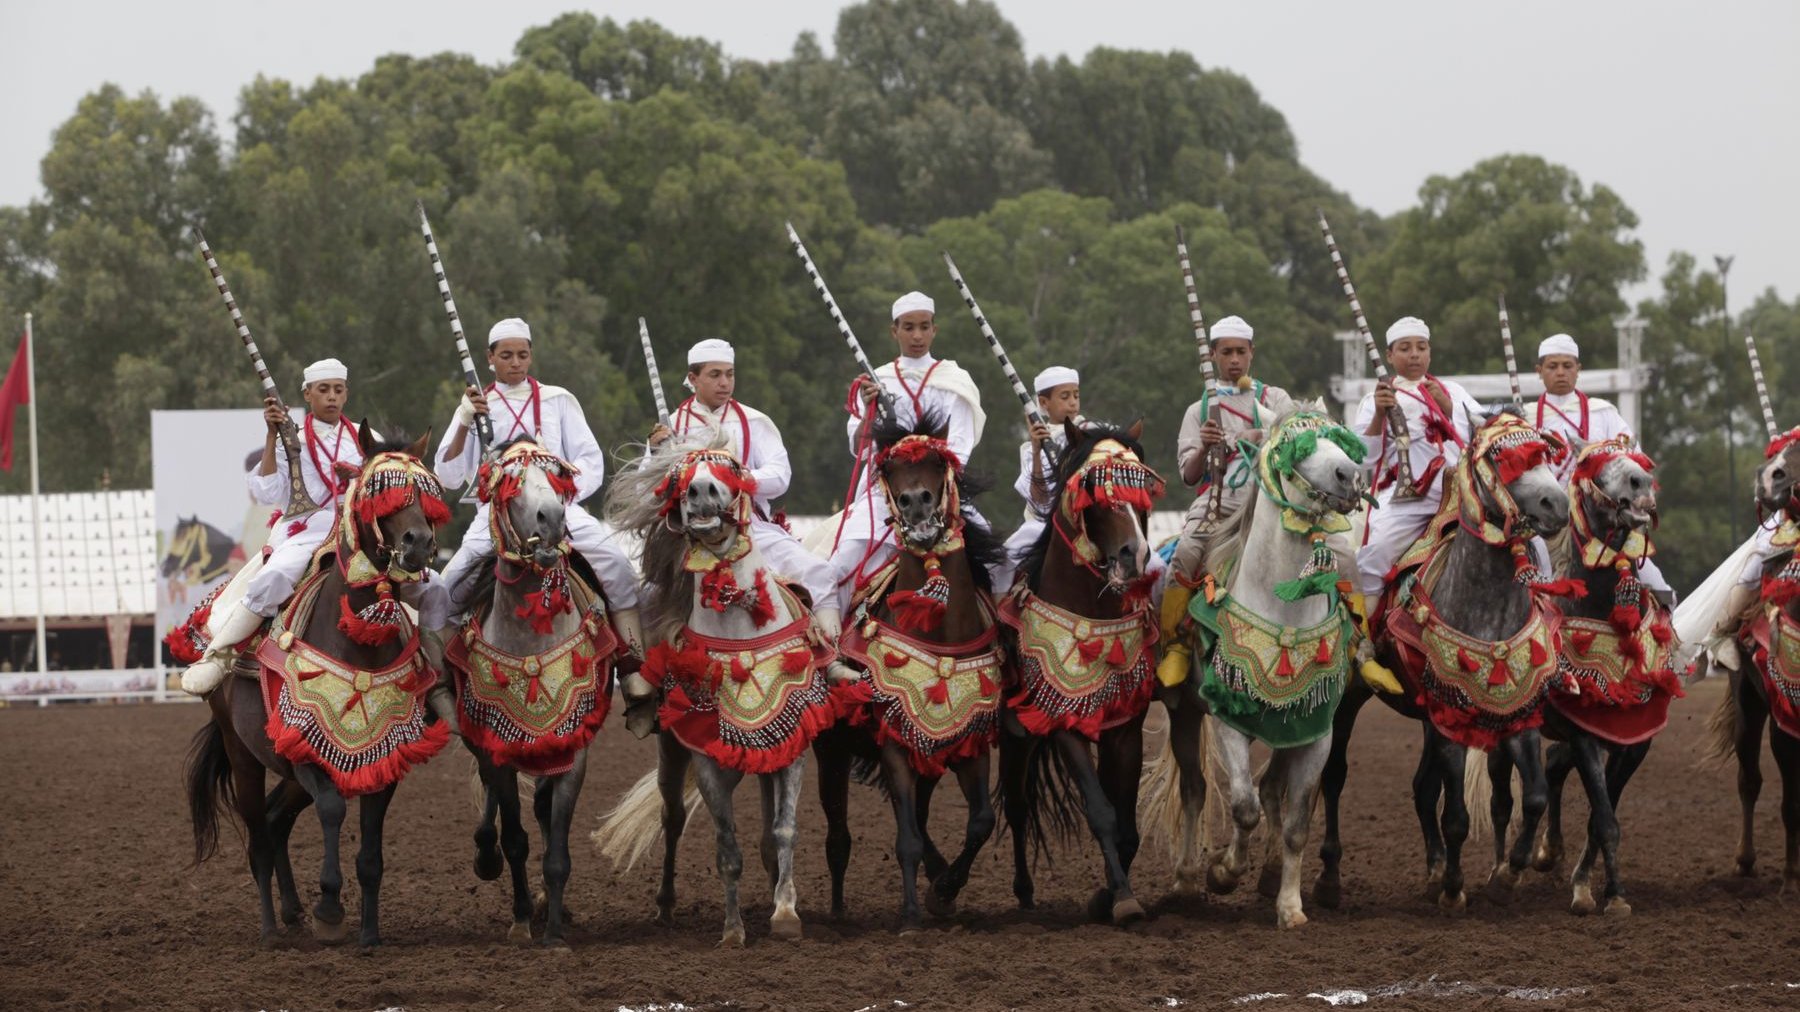 Les chevaux, toujours richement harnachés, sont montés par des cavaliers hors pair qui se prêtent au rituel du salut avant de se lancer sur la piste ensablée. 
